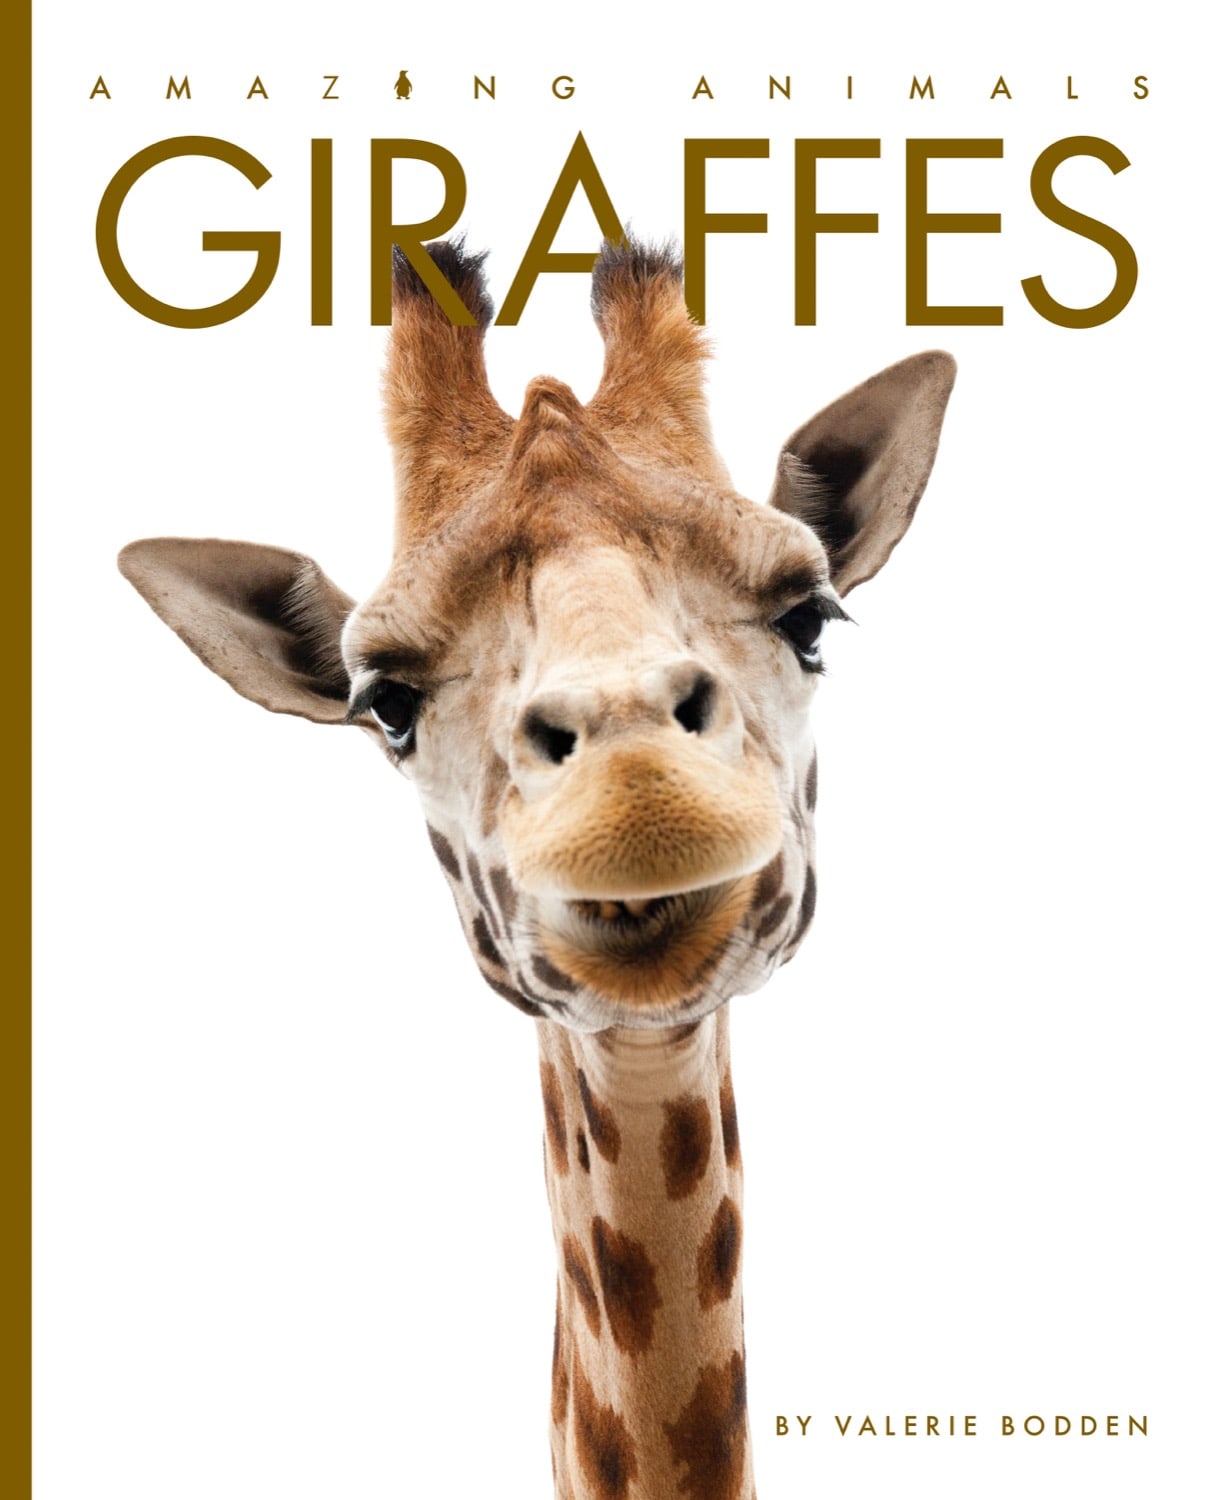 Erstaunliche Tiere (2022): Giraffen